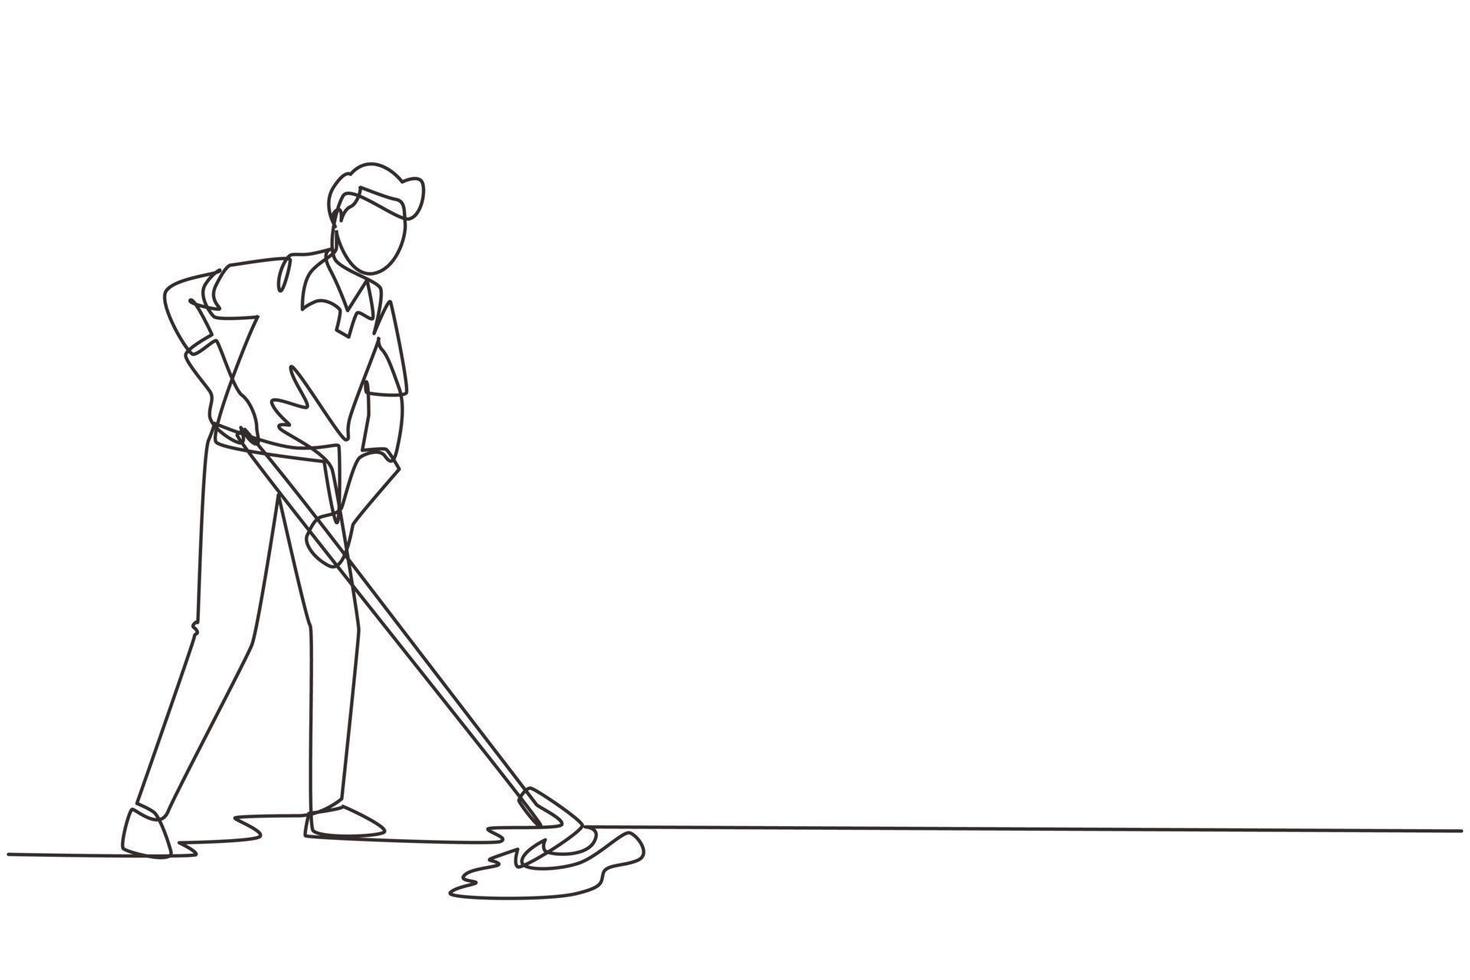 unico uomo di disegno a tratteggio che lava il pavimento in uniforme. addetto alle pulizie maschio che pulisce l'ufficio. servizio di pulizia e disinfezione ospedaliera. illustrazione vettoriale moderna di disegno a linea continua